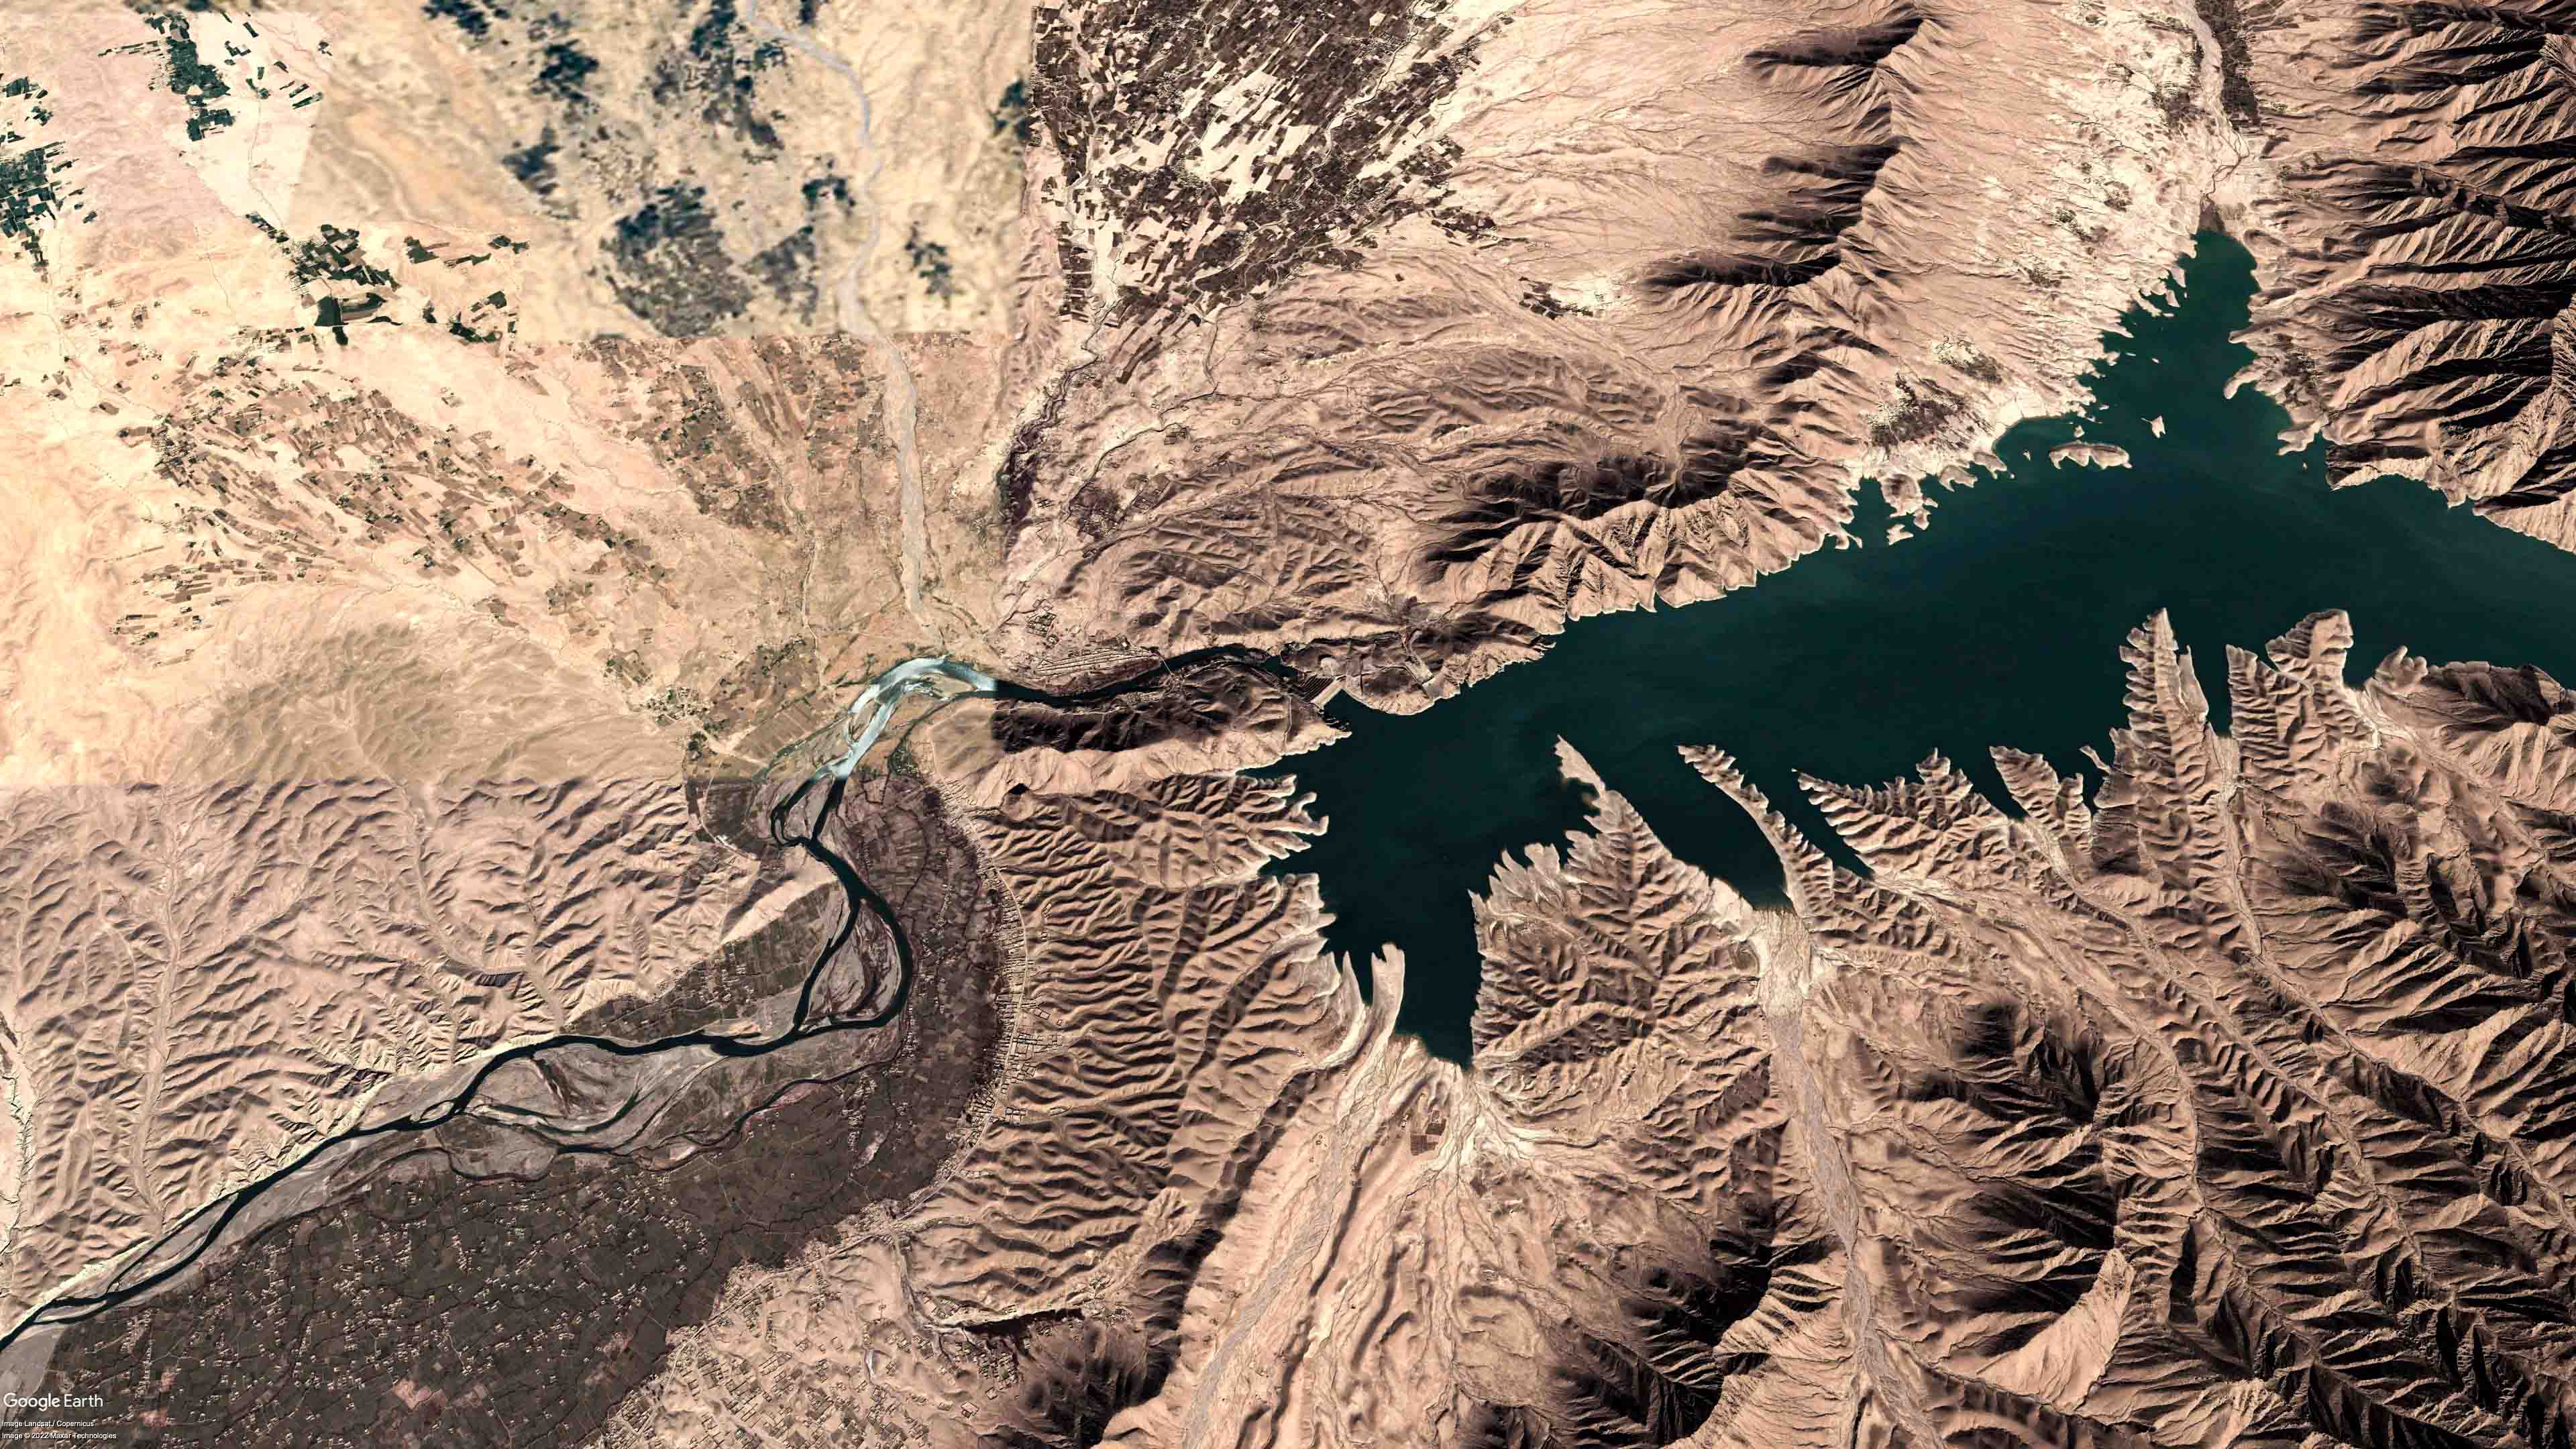 Kajaki Dam from space